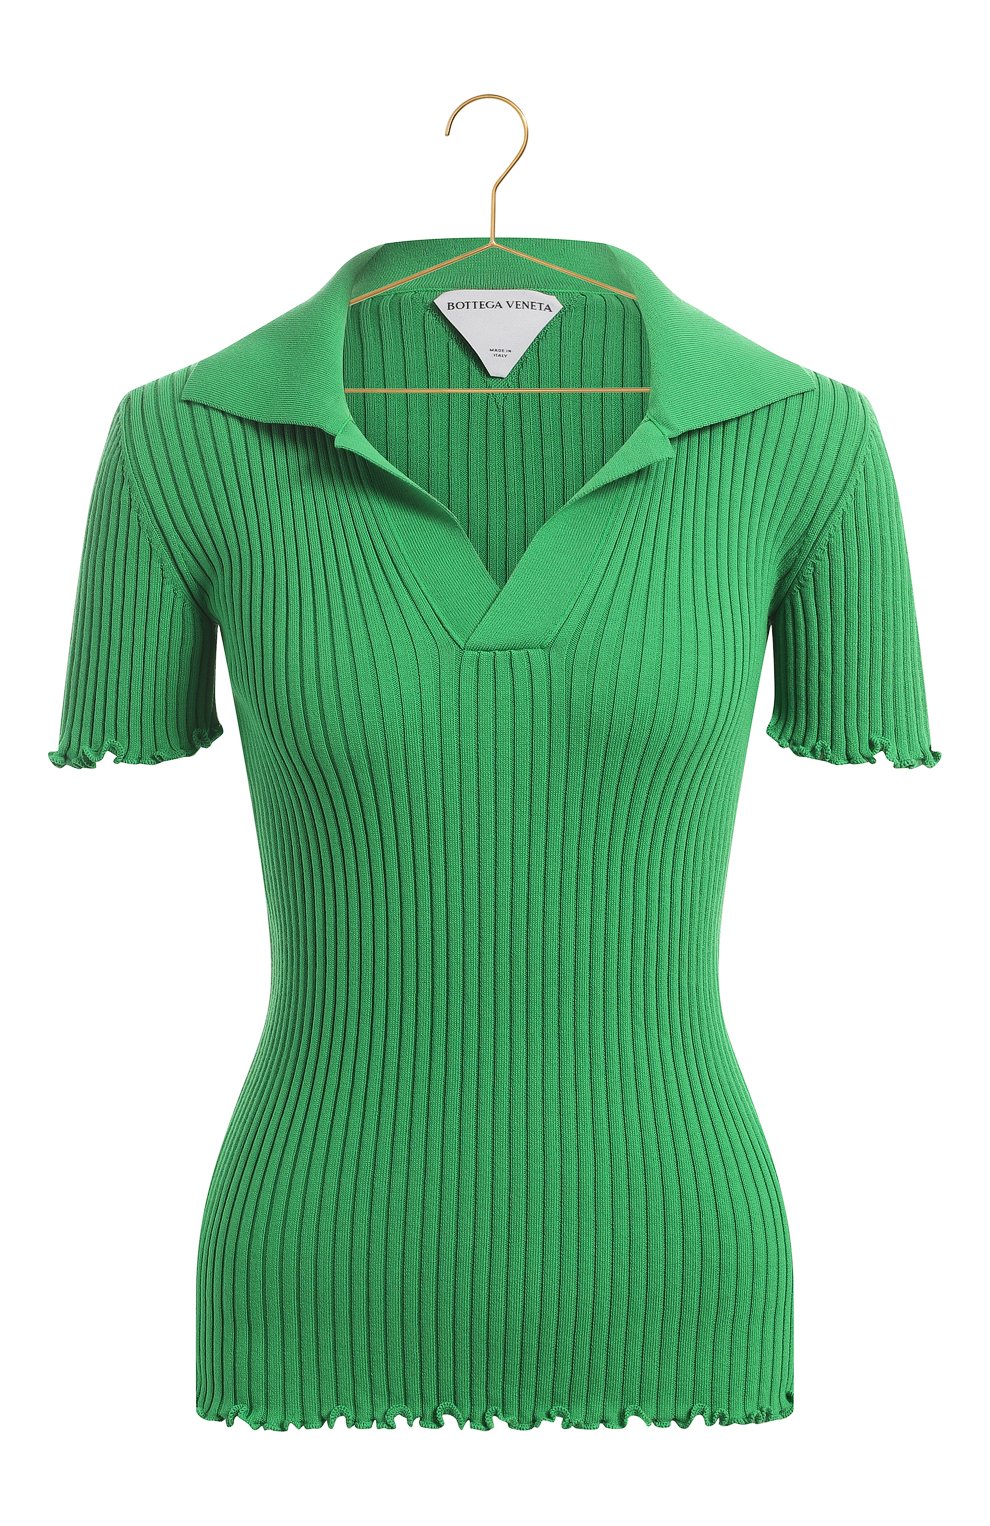 Хлопковый пуловер | Bottega Veneta | Зелёный - 1